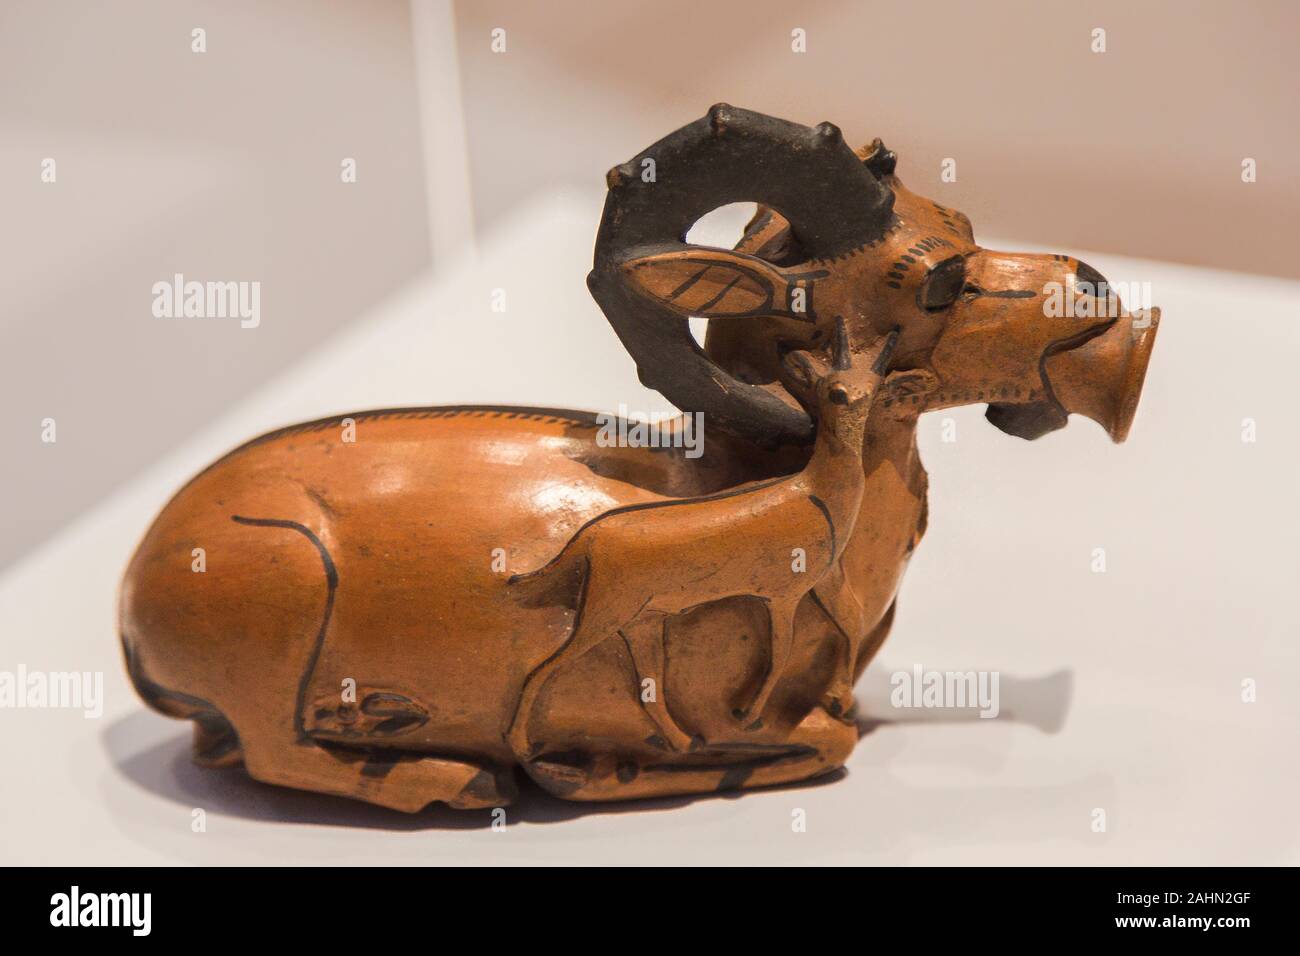 Ausstellung "Das Reich der Tiere im Alten Ägypten", im Jahr 2015 durch das Louvre Museum organisiert. Vase in Form eines Steinböcke, Terracotta, E 12659. Stockfoto